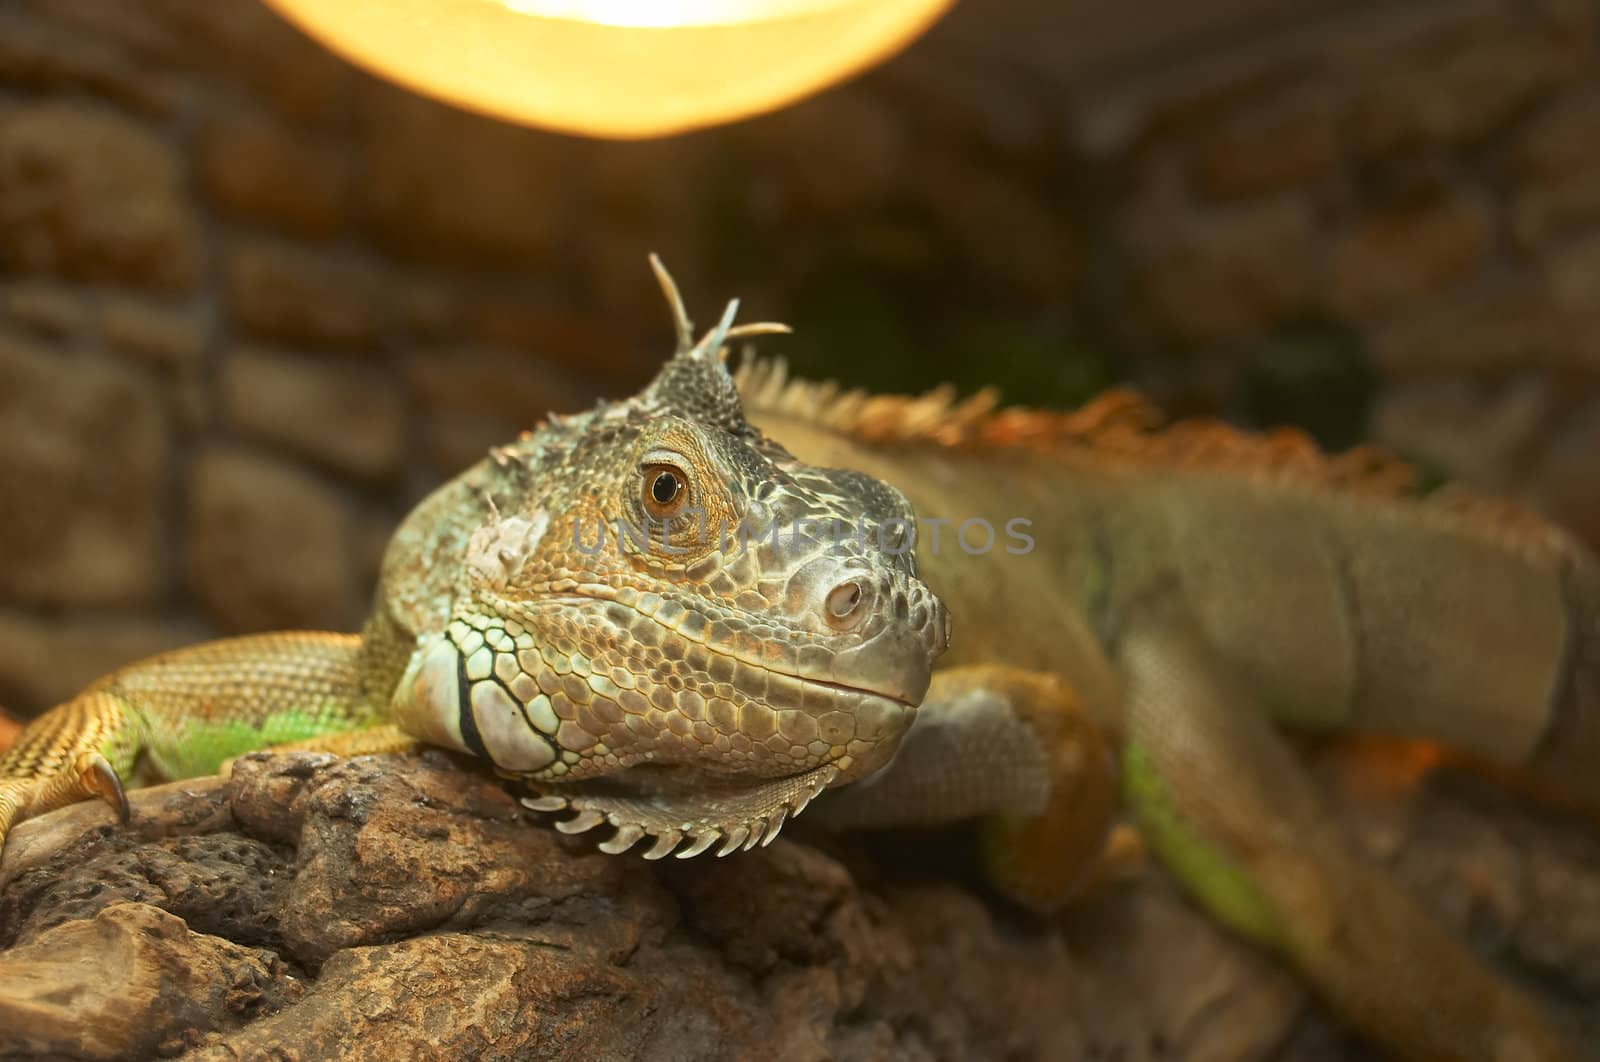 The big lizard in a terrarium is heated under a lamp